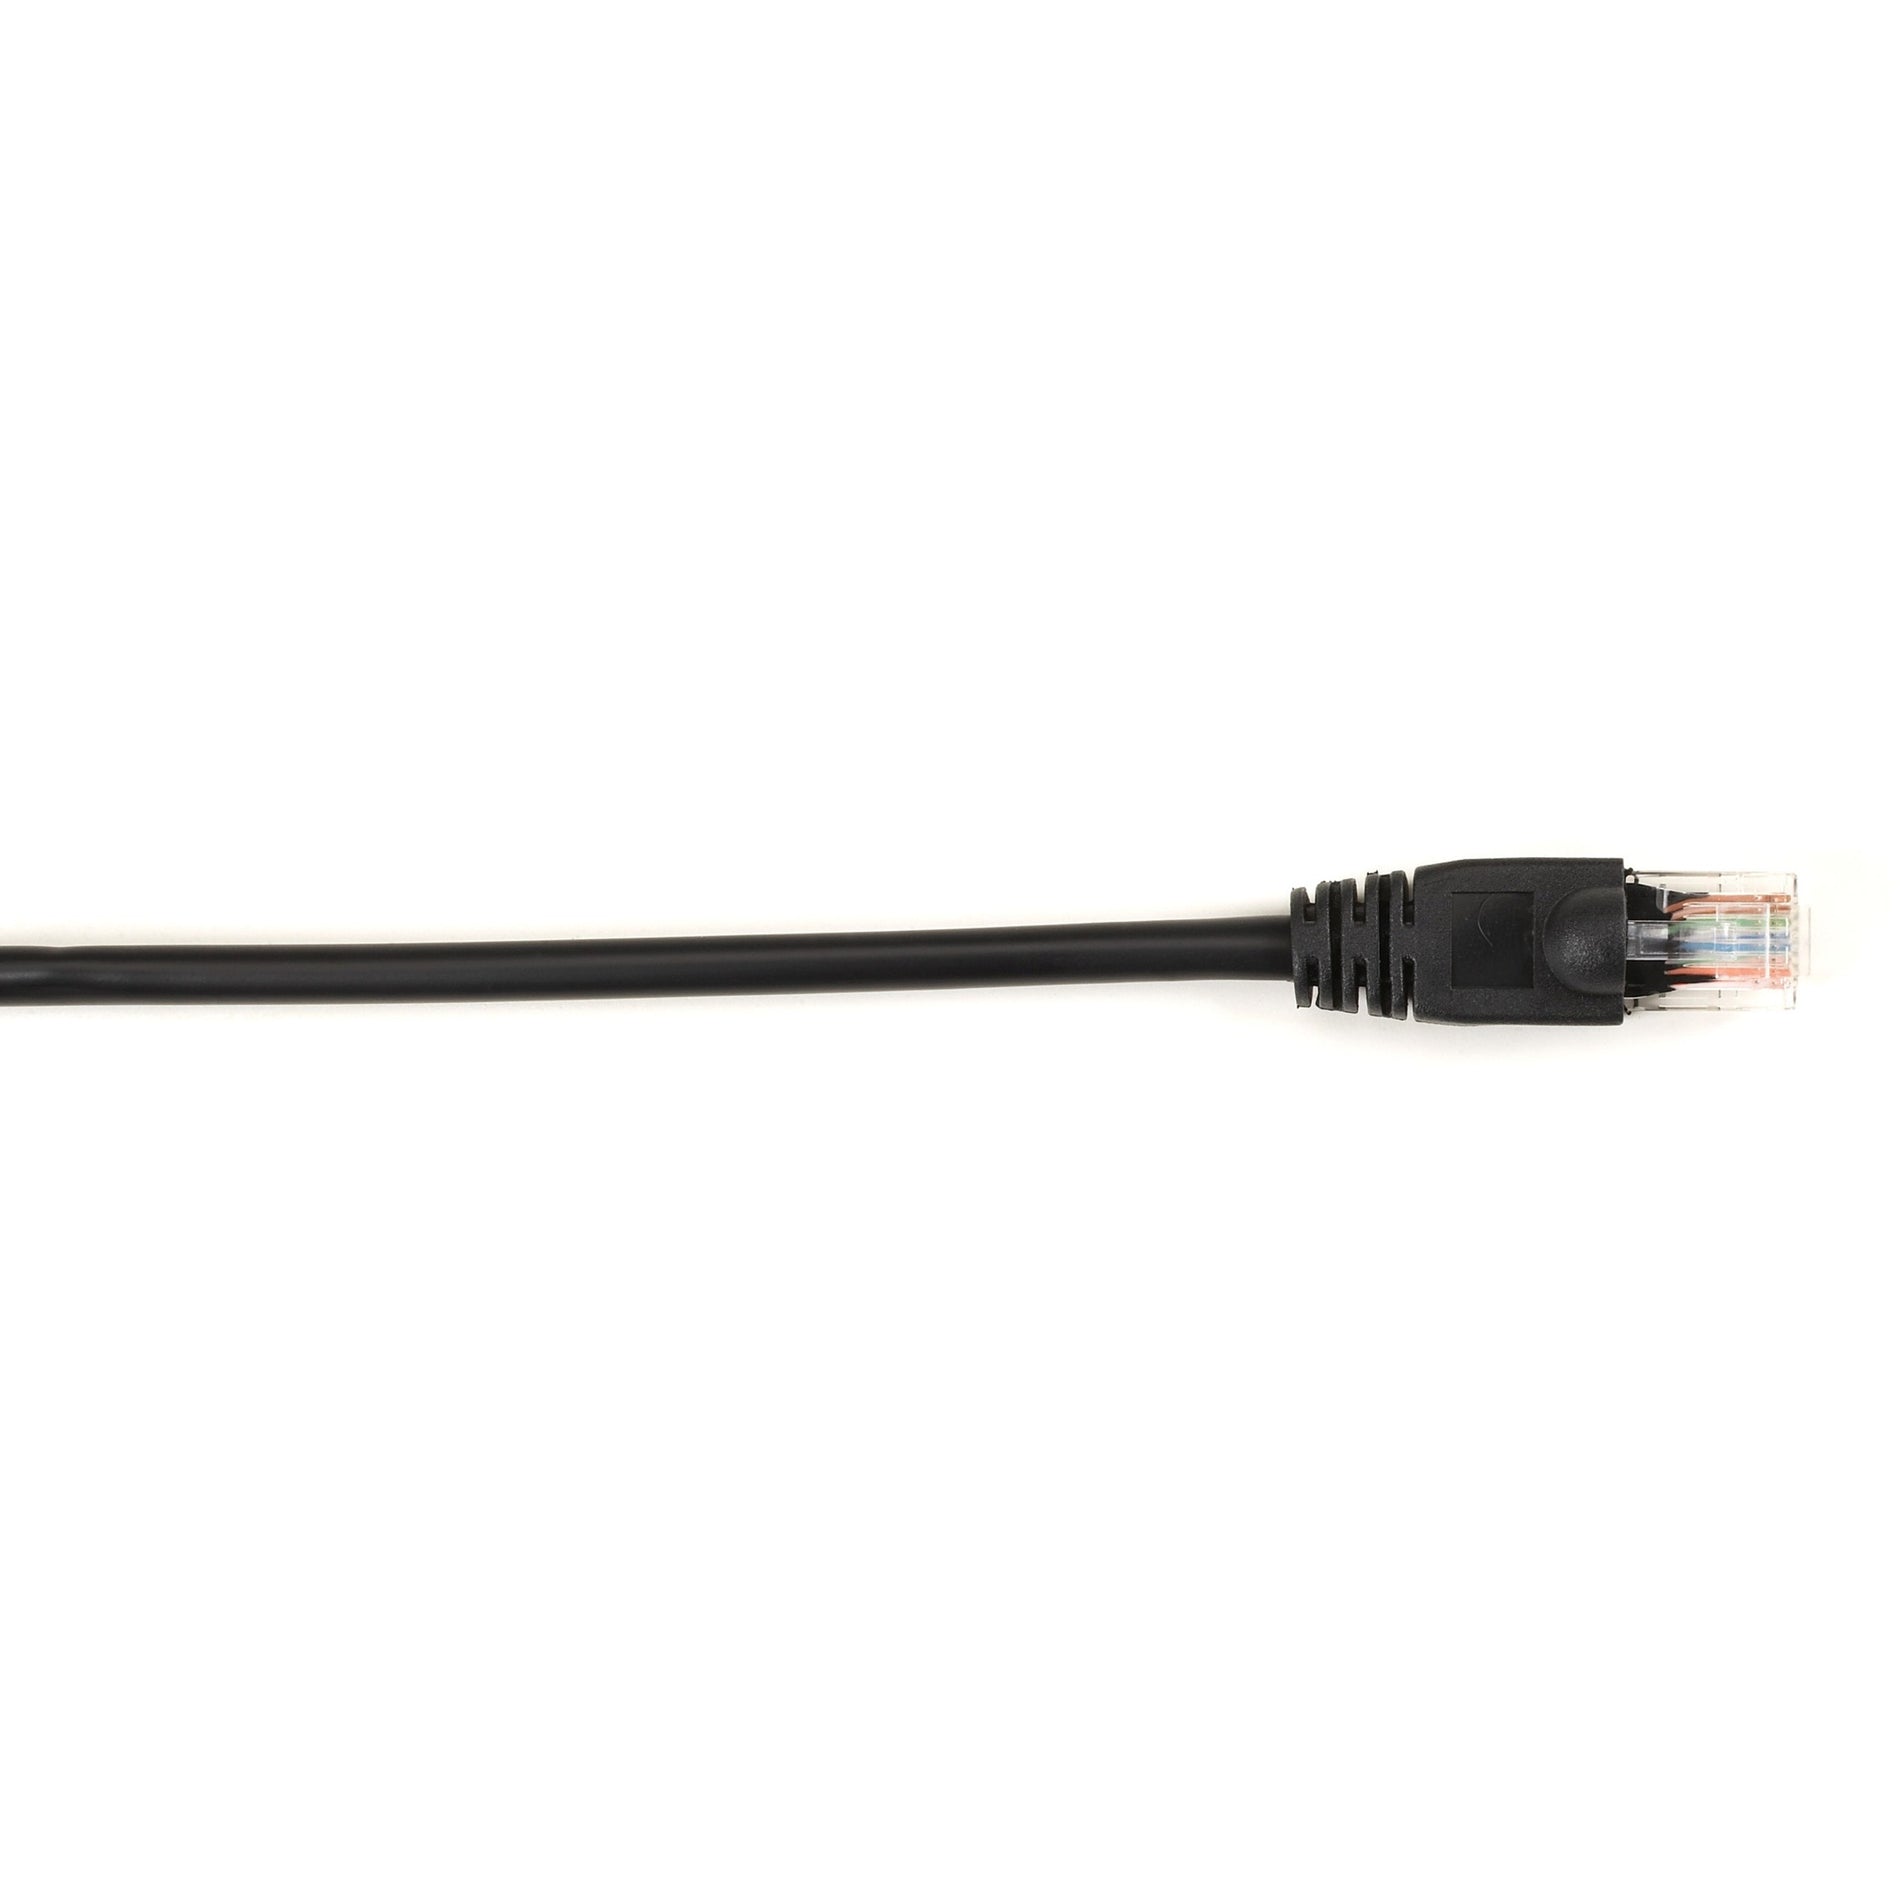 Cable de red de parche Cat.6 UTP Black Box CAT6PC-001-BK 1 ft sin enganches velocidad de transferencia de datos de 1 Gbit/s.